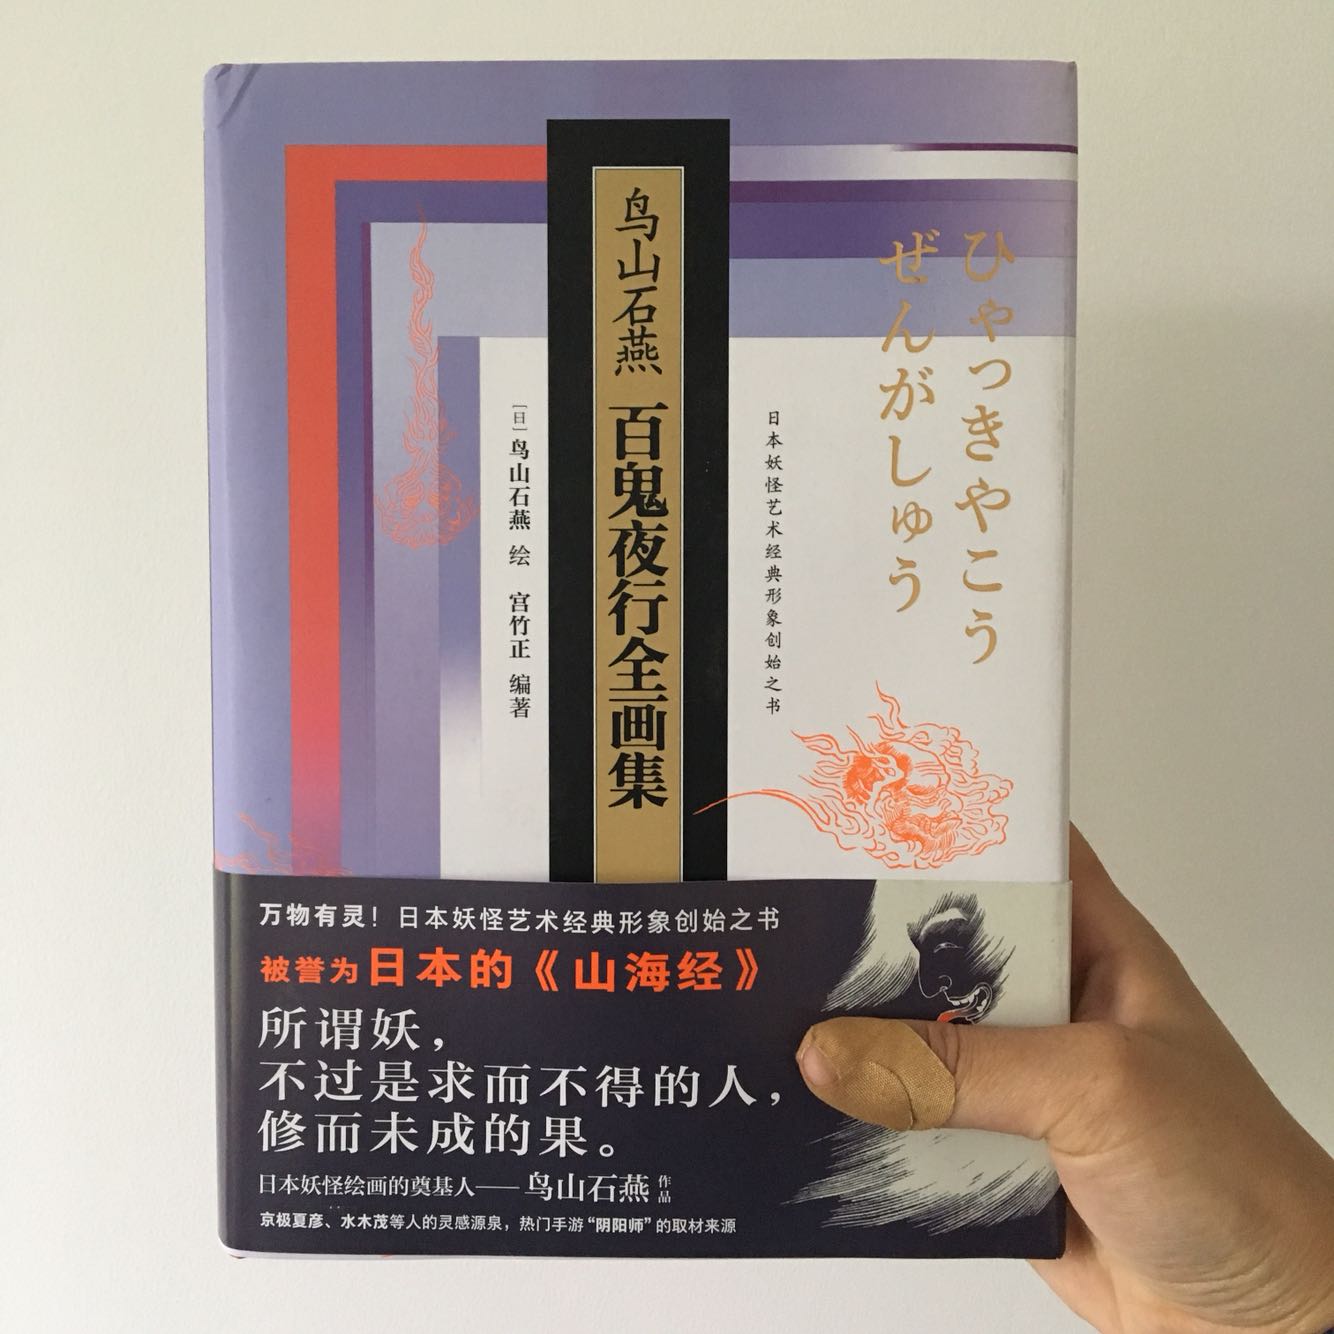 因为阴阳师而入手，对日本的妖怪很好奇。需要注意这本和小本的上下册百鬼夜行是一样的内容。